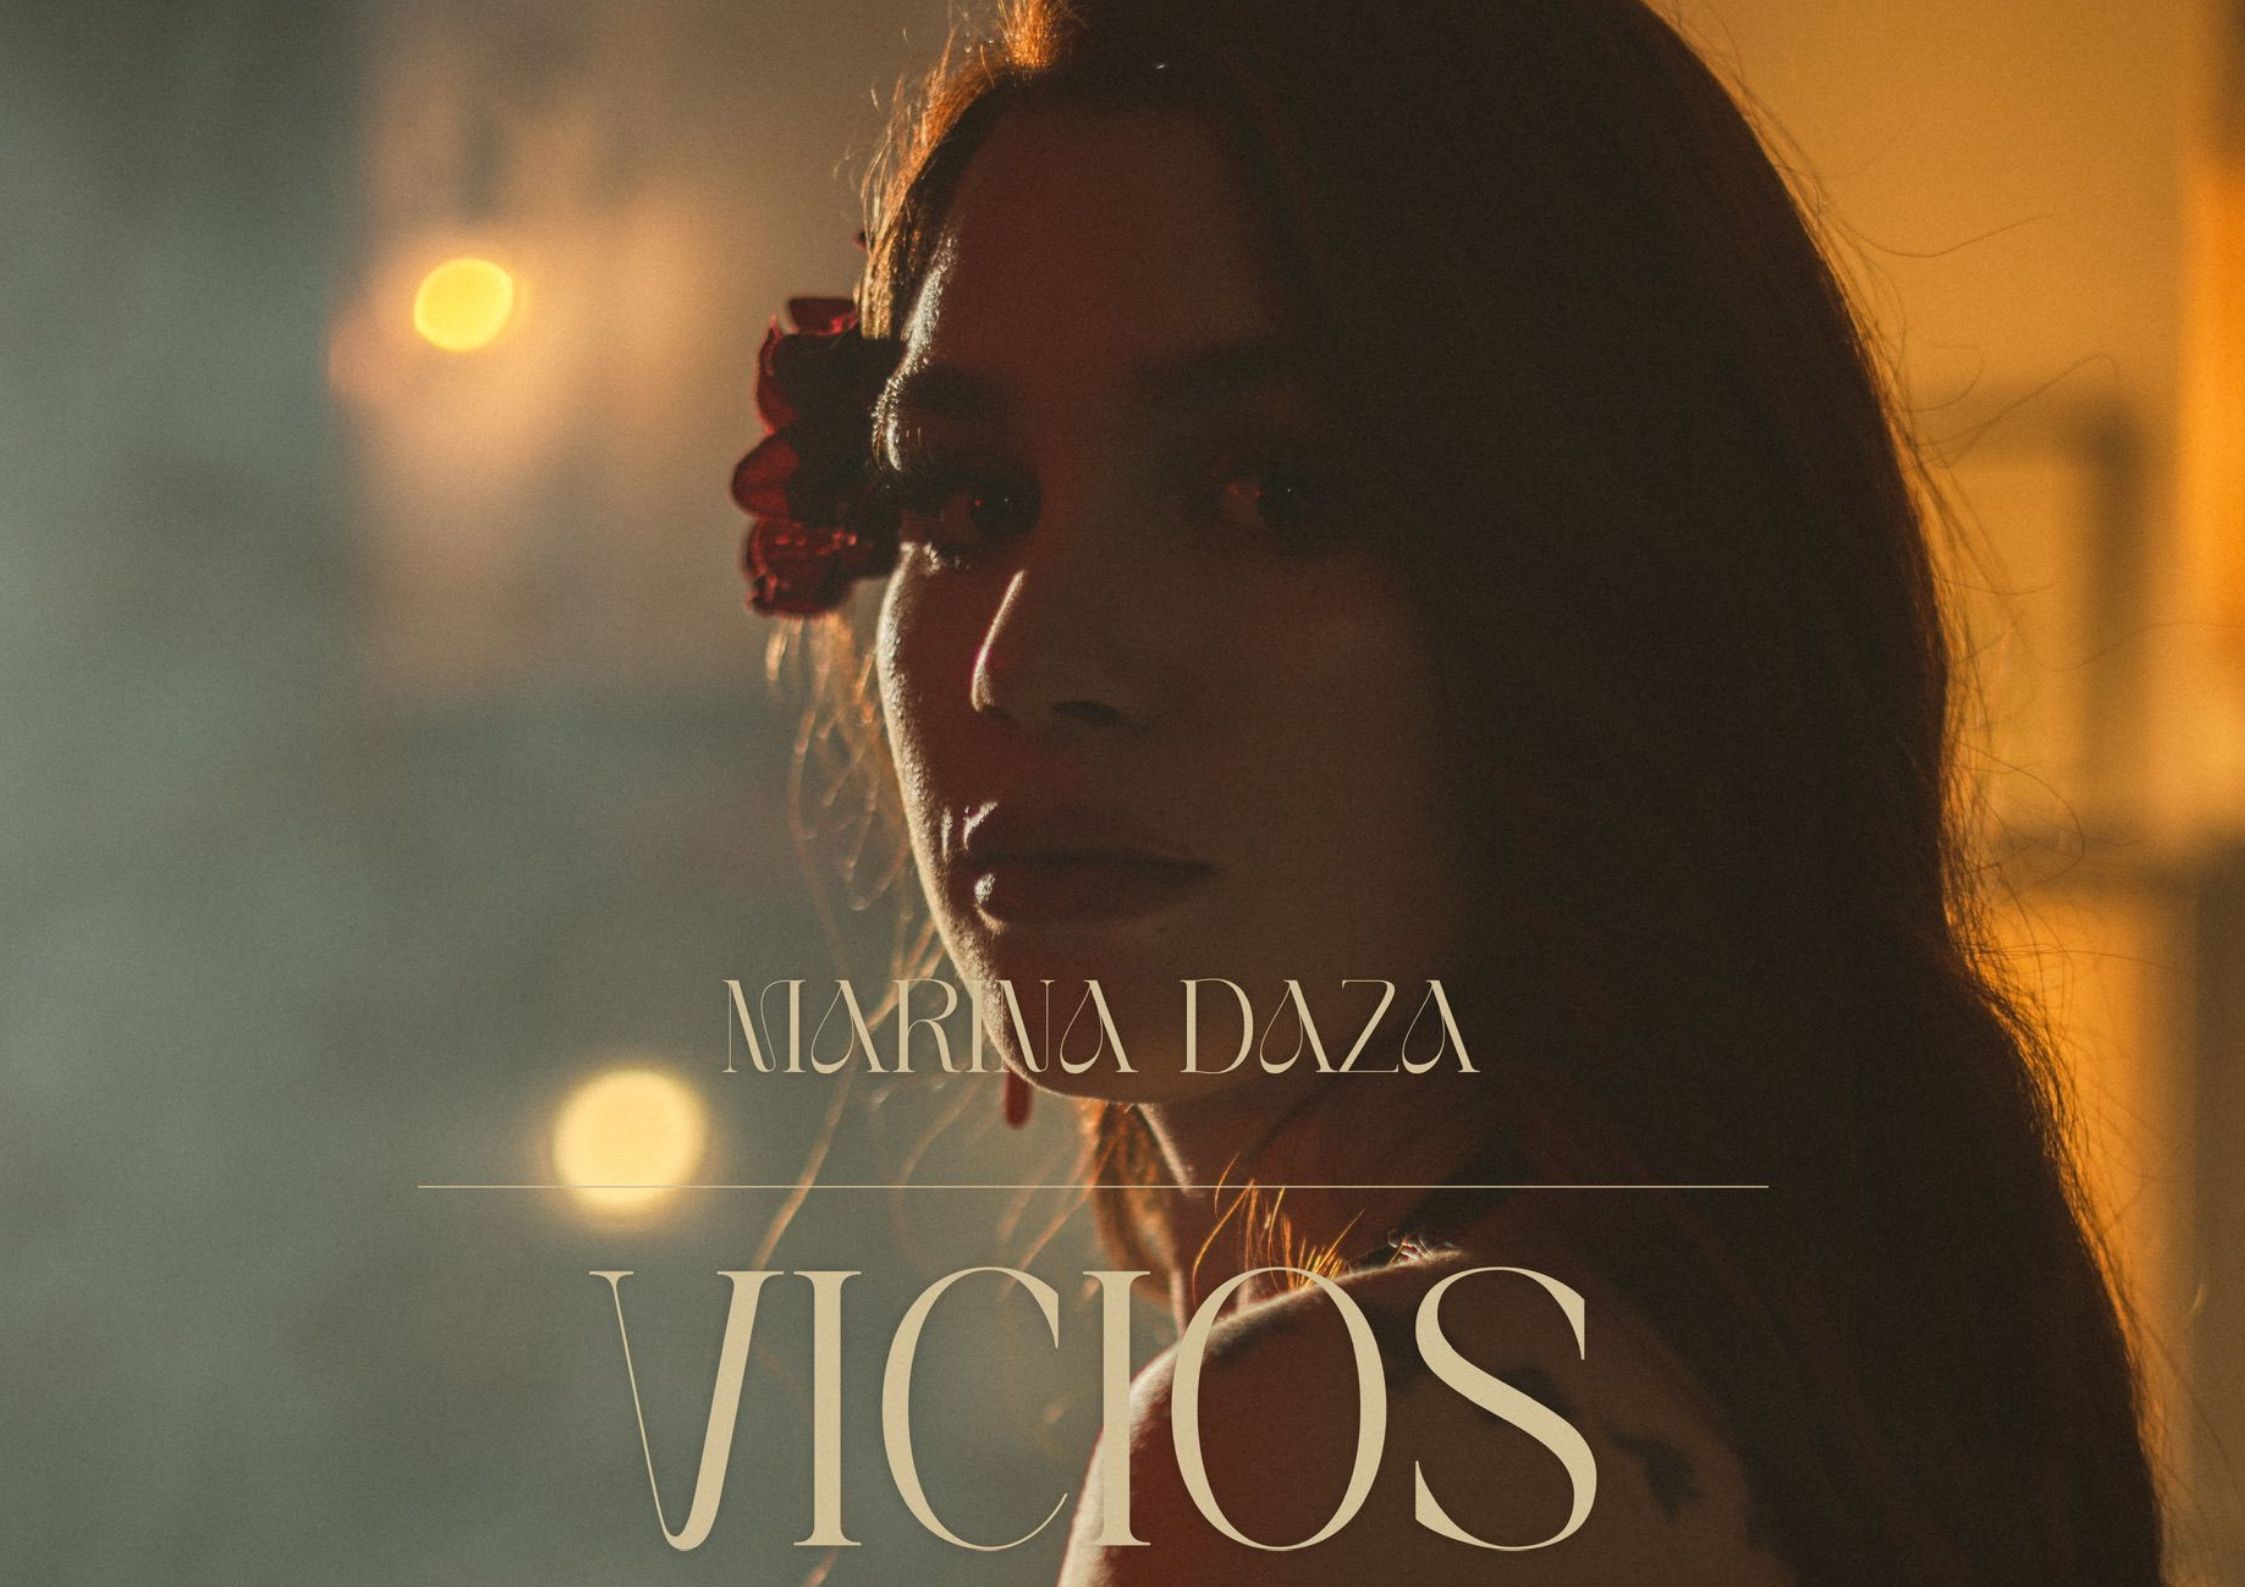 Marina Daza posando para la portada de su último single "Vicios"